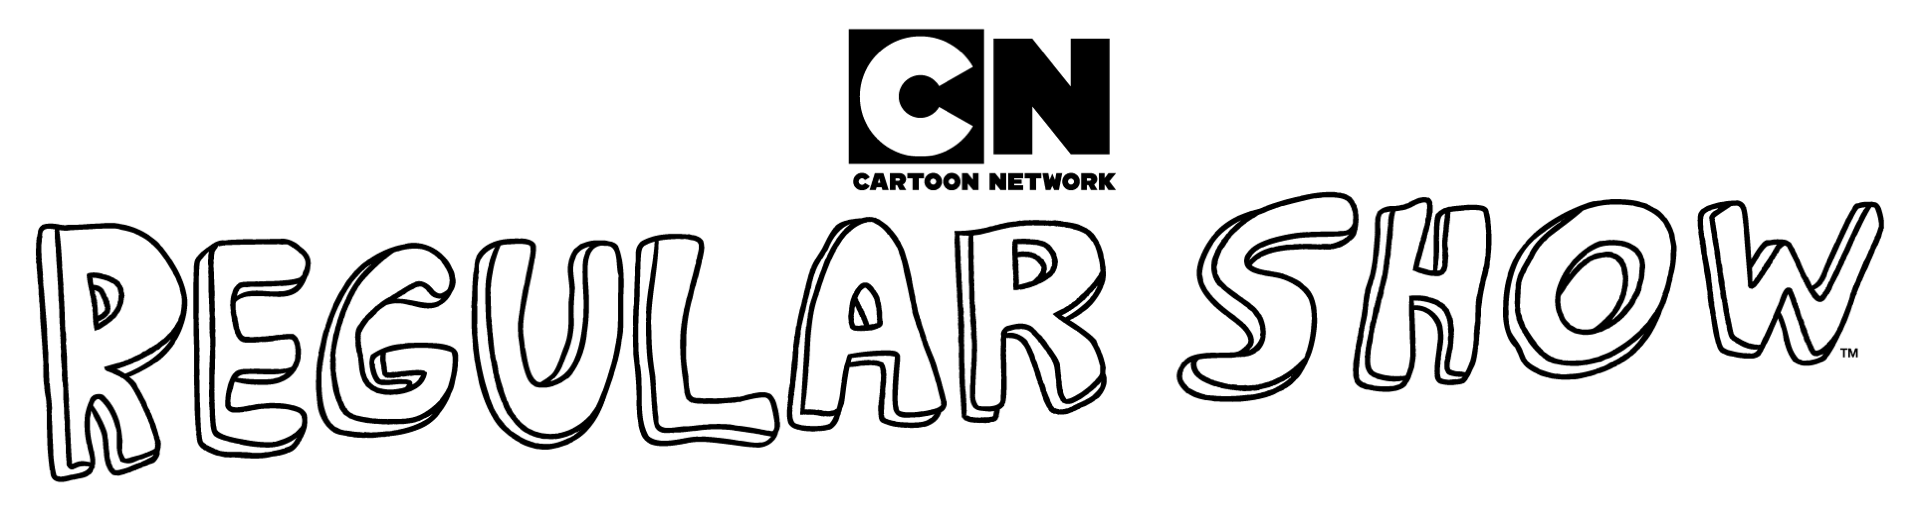 Regular Show (Apenas um Show)  Regular show, Cartoon shows, Cartoon network